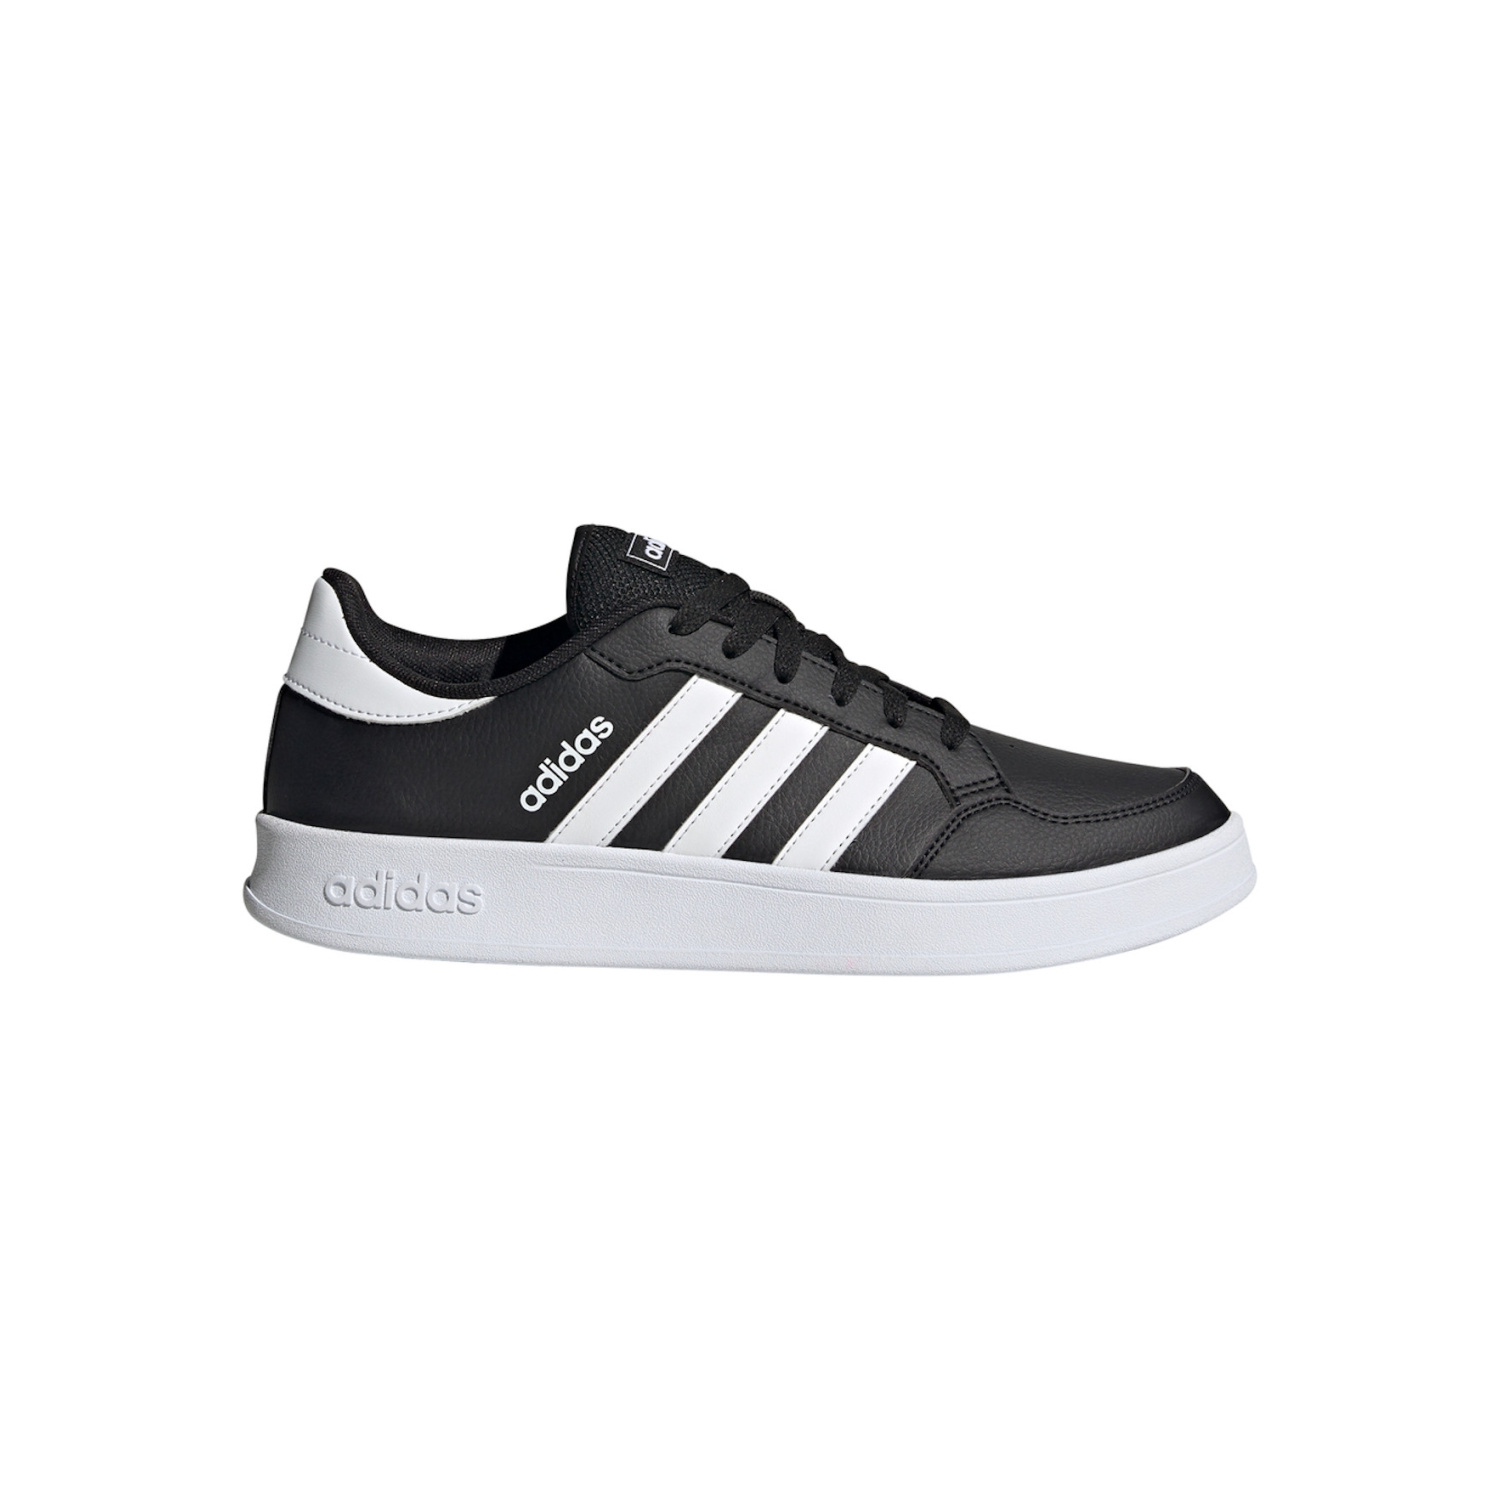 waardigheid Cirkel pad Adidas Low sneaker black - Sportshoes - Shoes - Men - Berca shoes